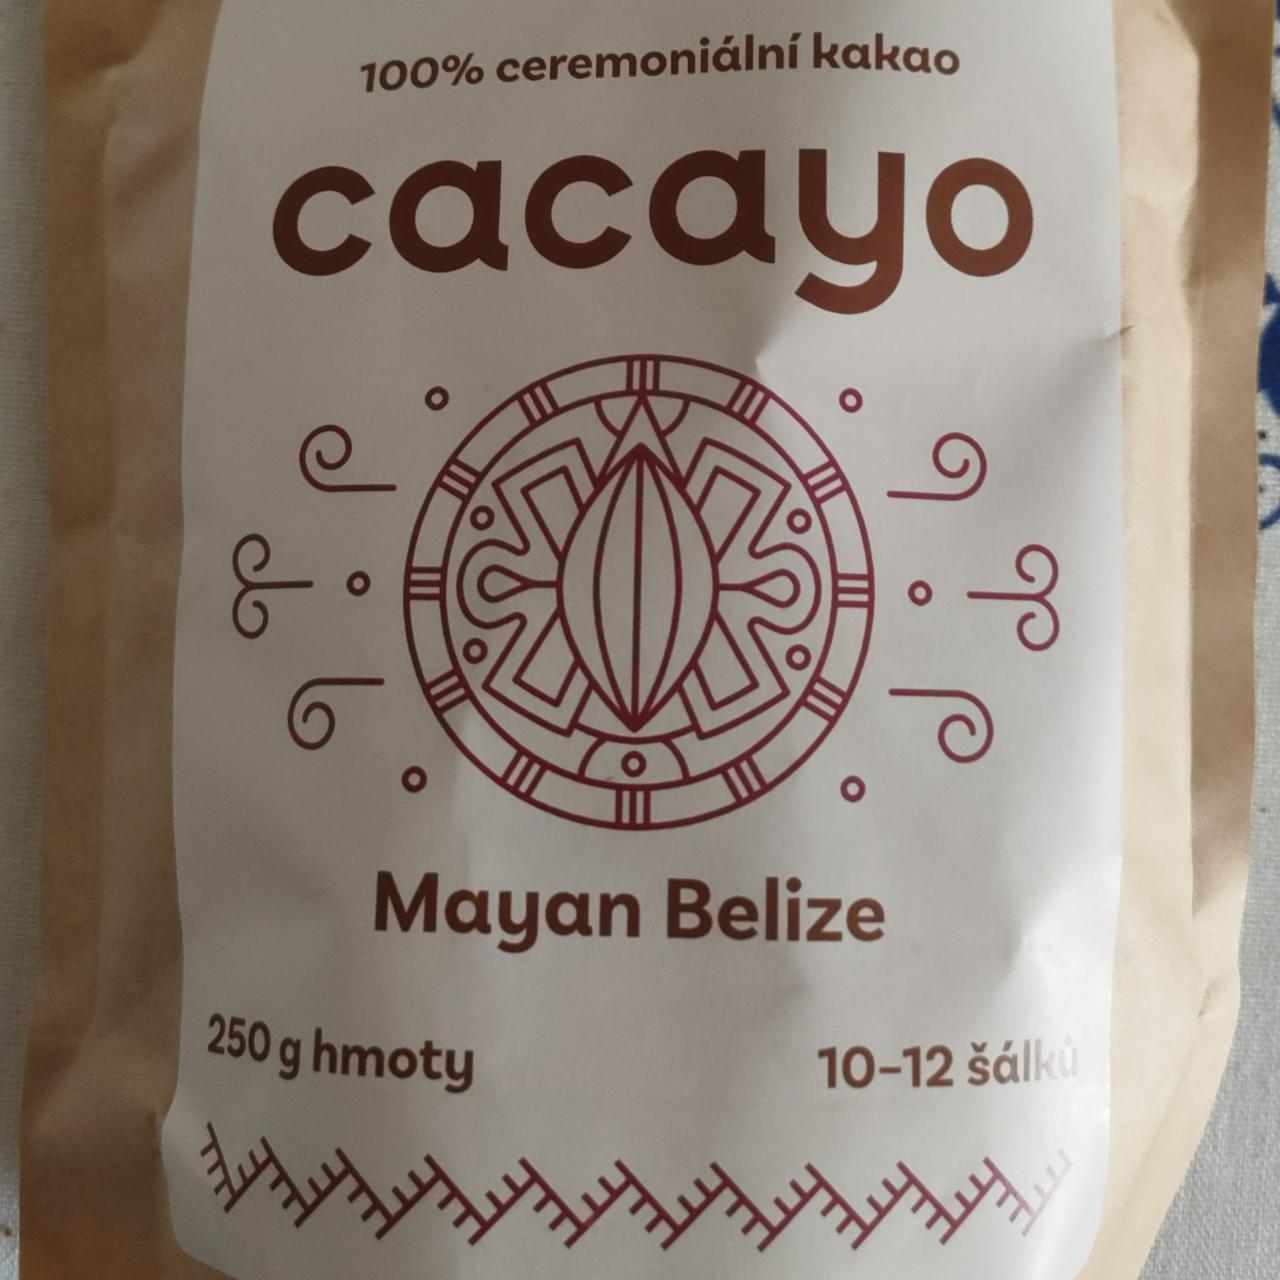 Fotografie - 100% ceremoniální kakao Mayan Belize Cacayo